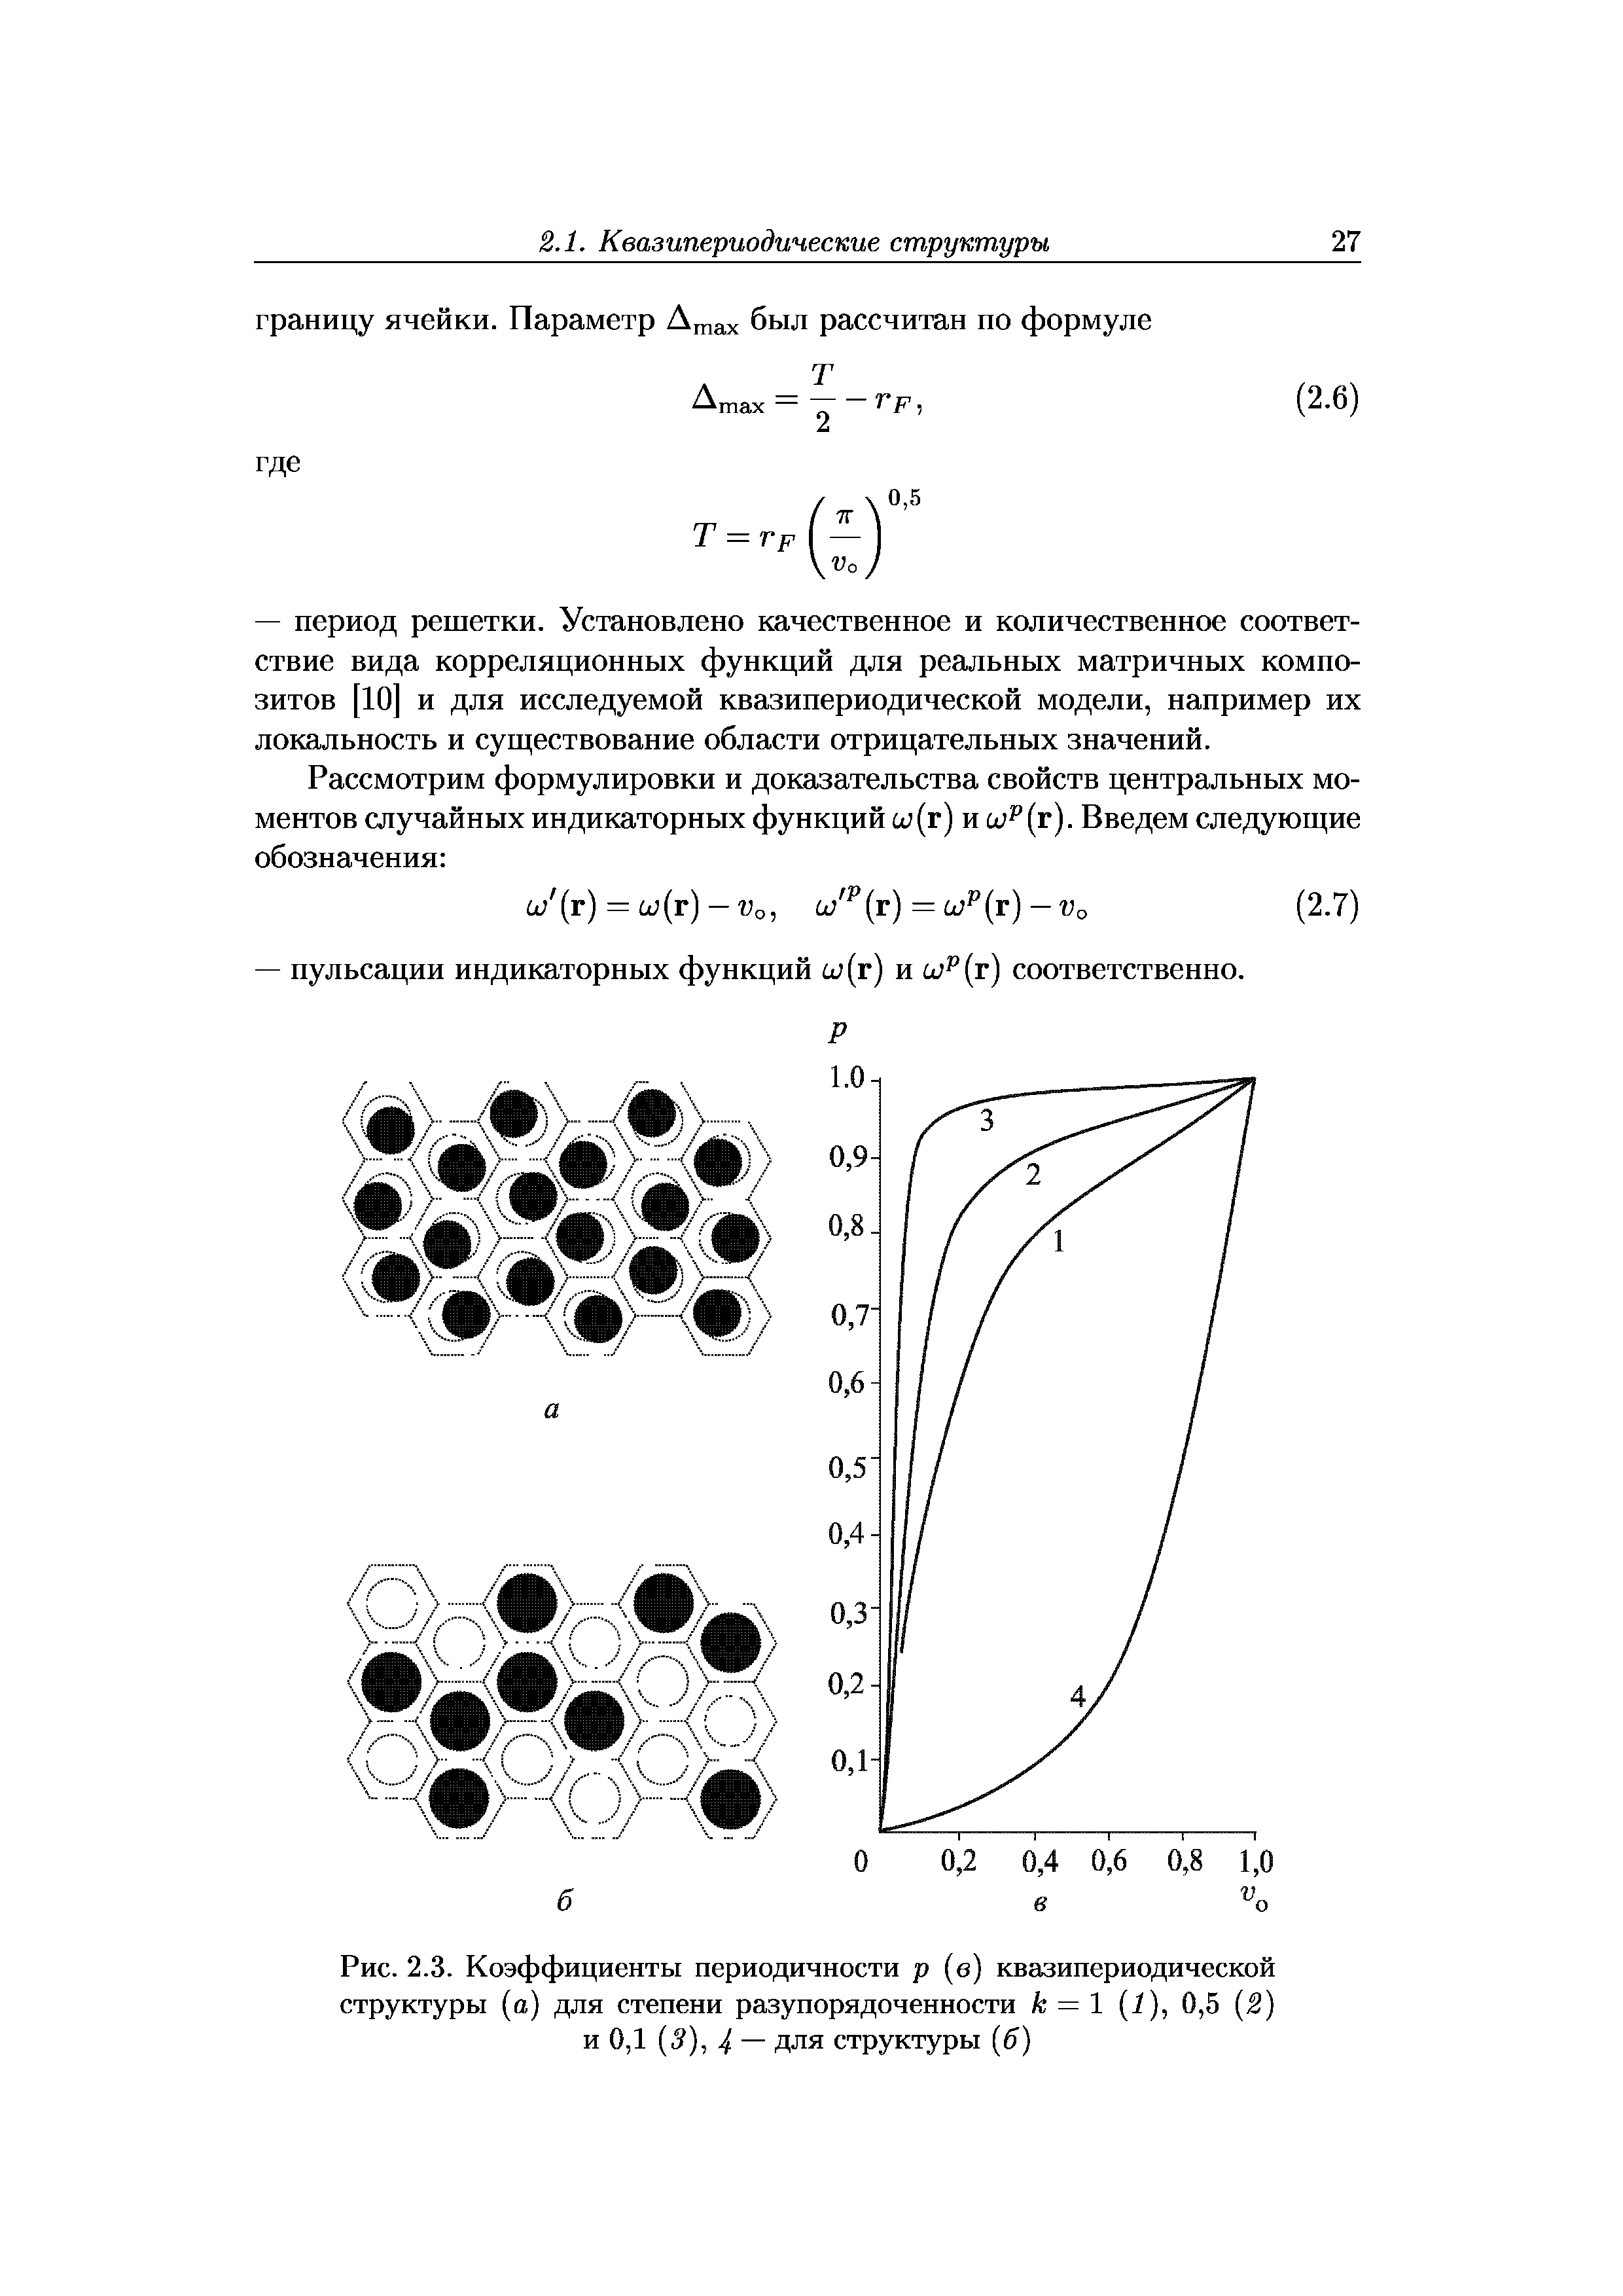 Рис. 2.3. Коэффициенты периодичности р (в) квазипериодической структуры (а) для степени разупорядоченности к = 1 (1), 0,5 2) и 0,1 (5), 4 — для структуры (б)
